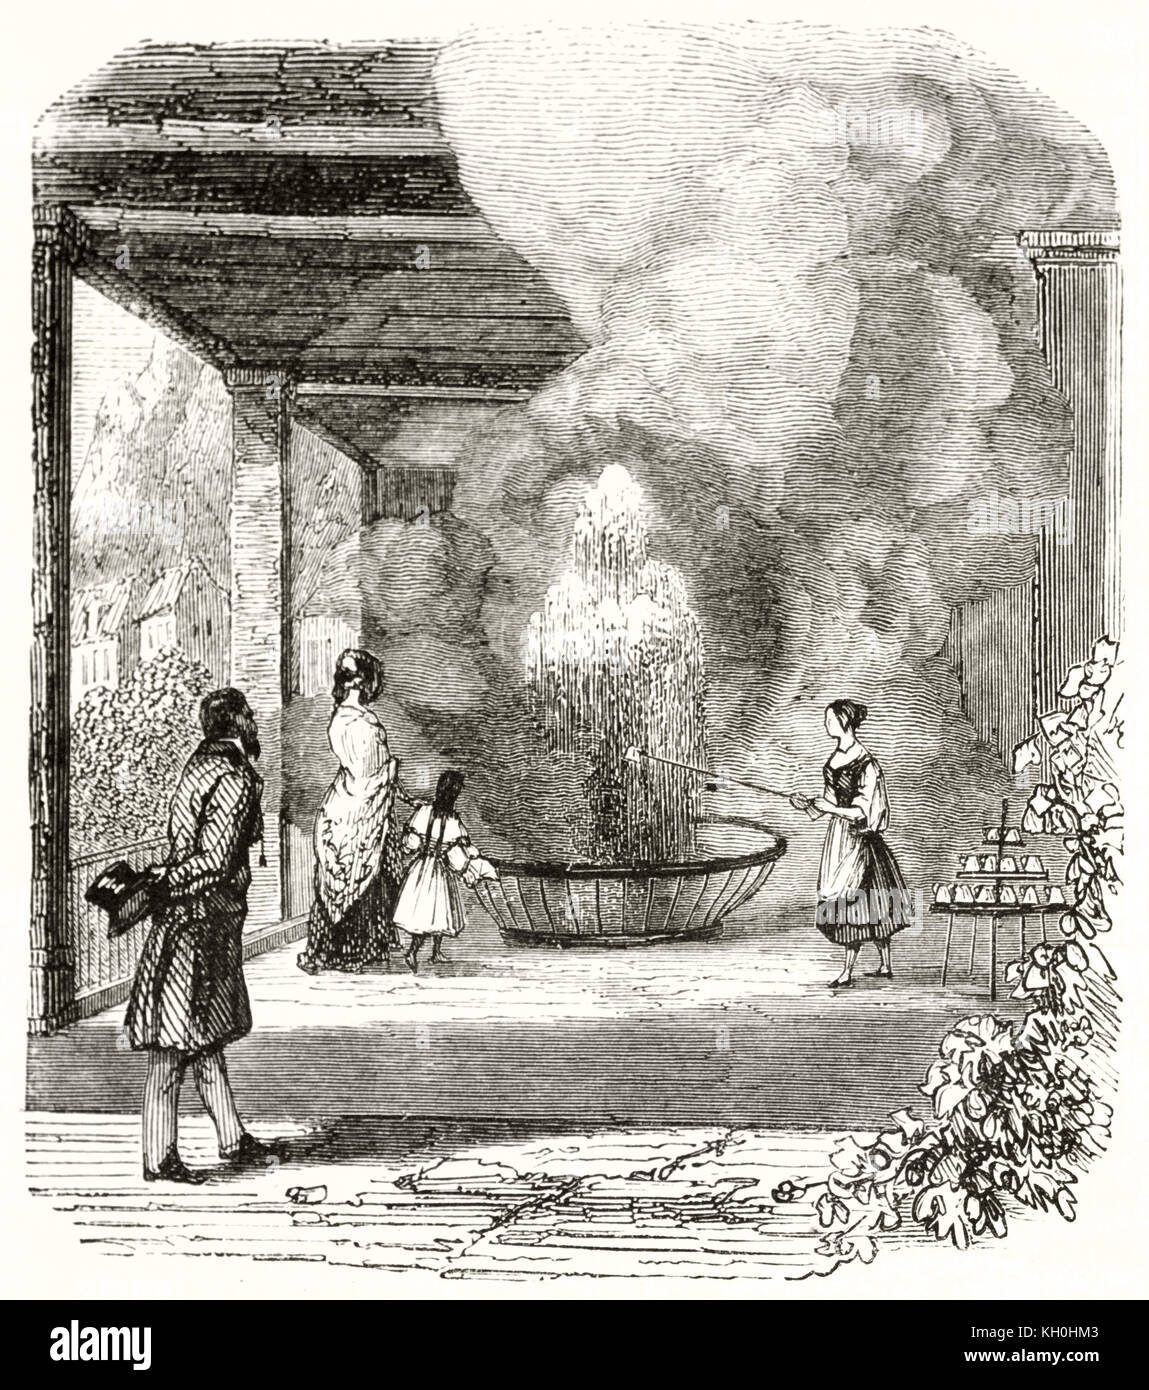 Vecchia illustrazione di acqua termale a getto, Boemia, Repubblica Ceca. Da autore non identificato, publ. su Magasin pittoresco, Parigi, 1847 Foto Stock